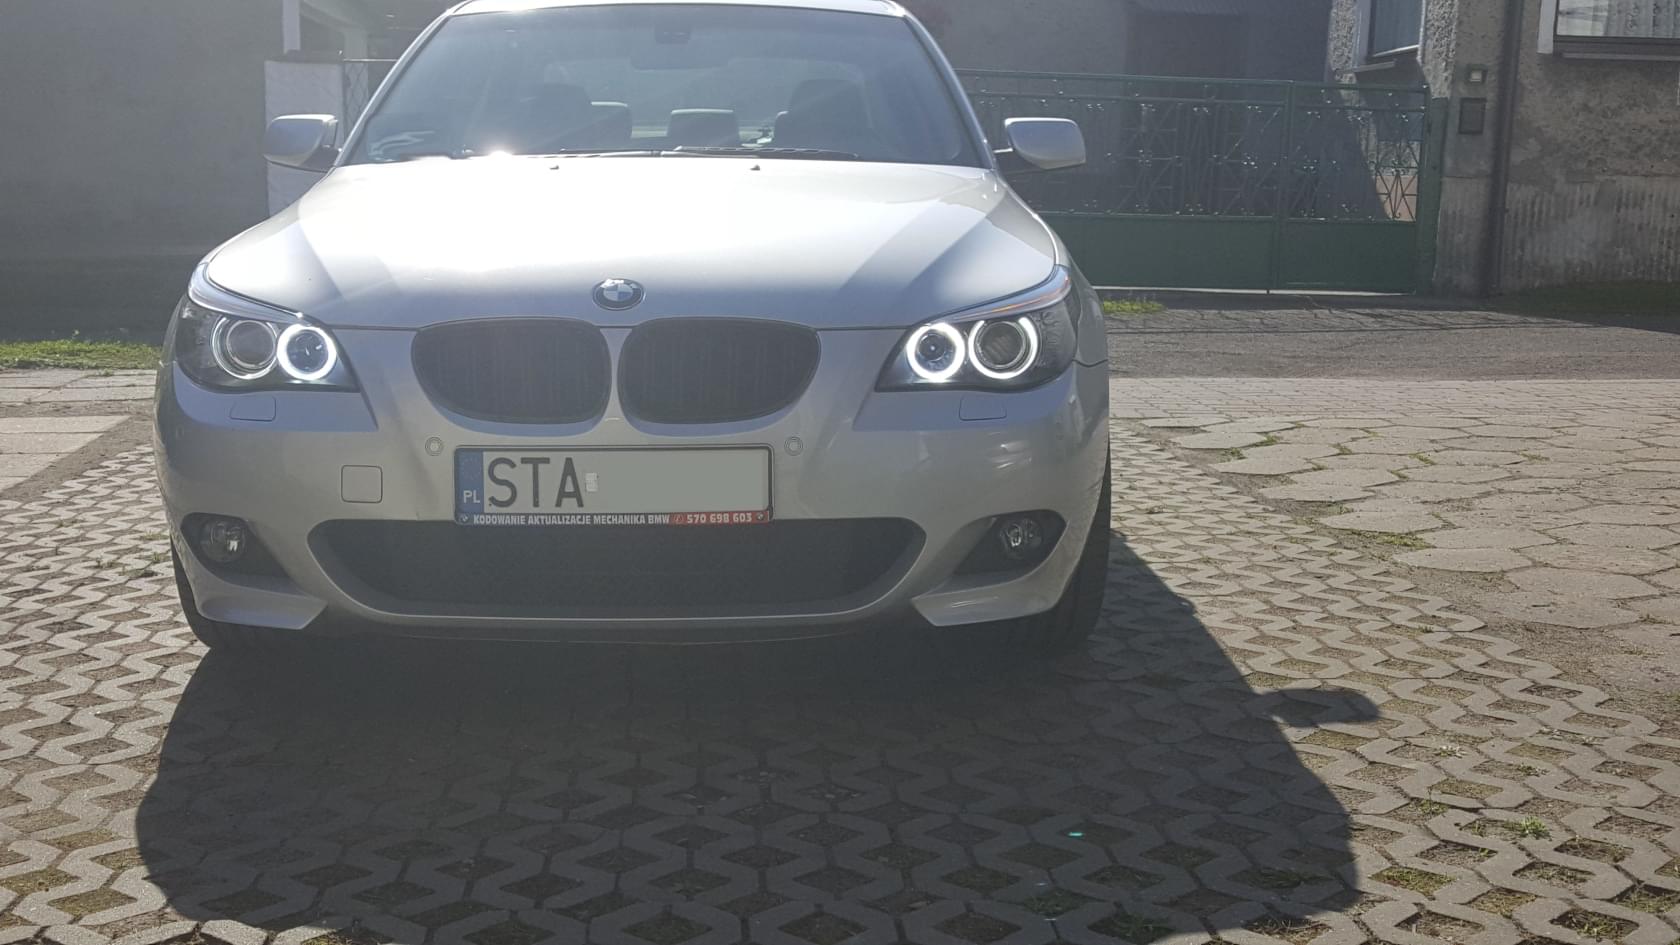 BMWklub.pl • Zobacz temat LED MARKERY żarówki "dające